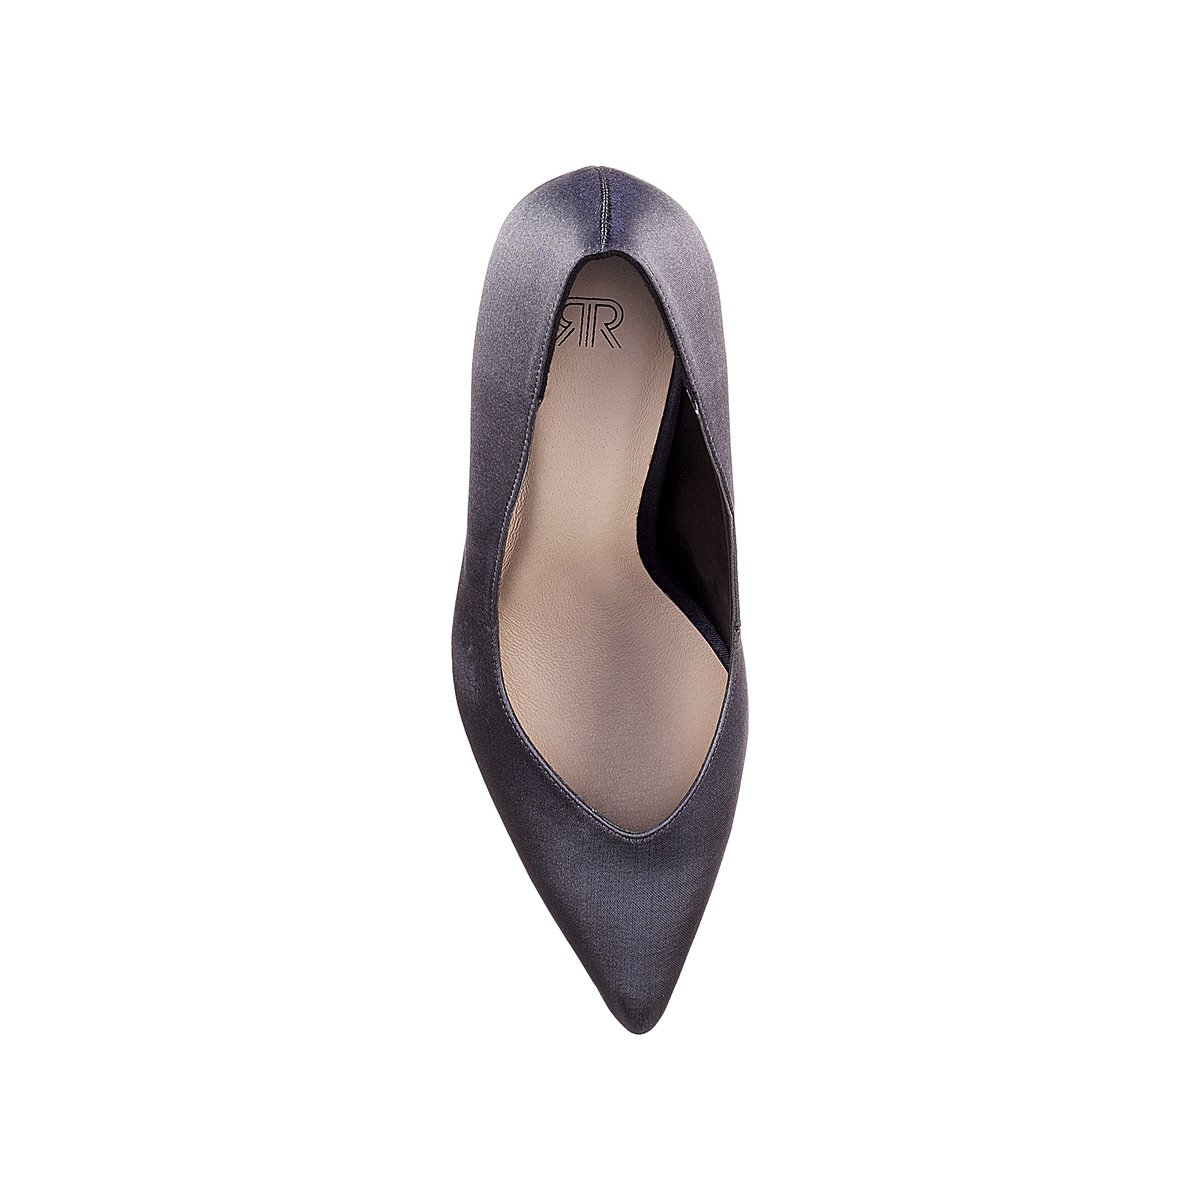 Туфли La Redoute Из сатина с заостренным мыском 36 серый, размер 36 - фото 4